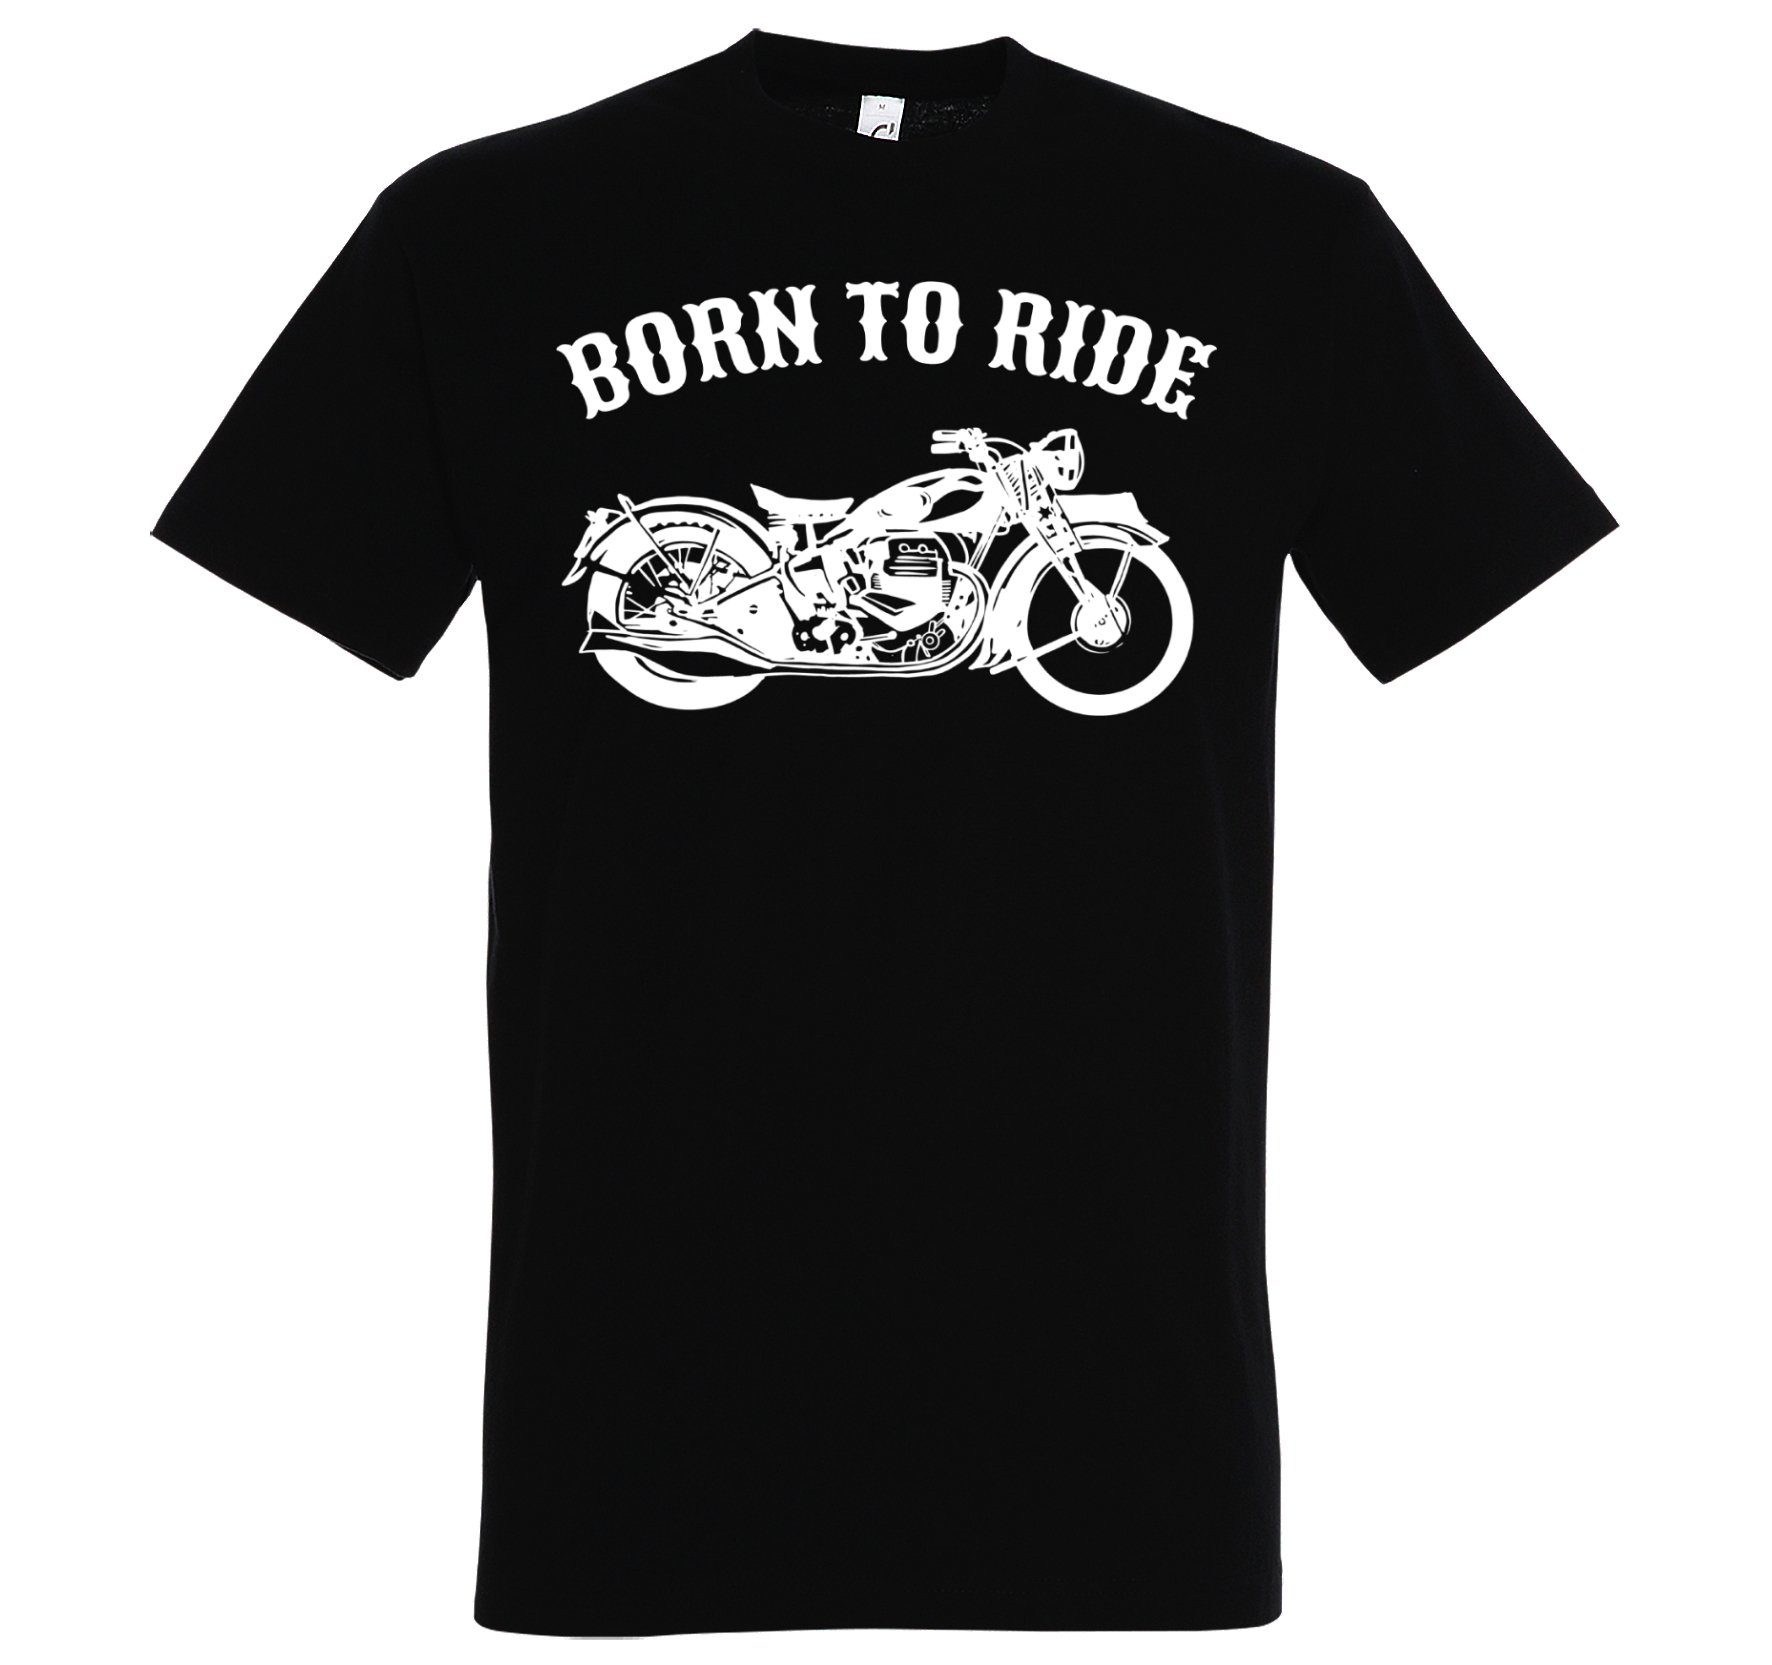 Verkaufen Sie zum niedrigsten Preis! Youth Designz Print-Shirt Born Motorrad Herren To mit Spruch modischem Print T-Shirt Biker Schwarz Ride